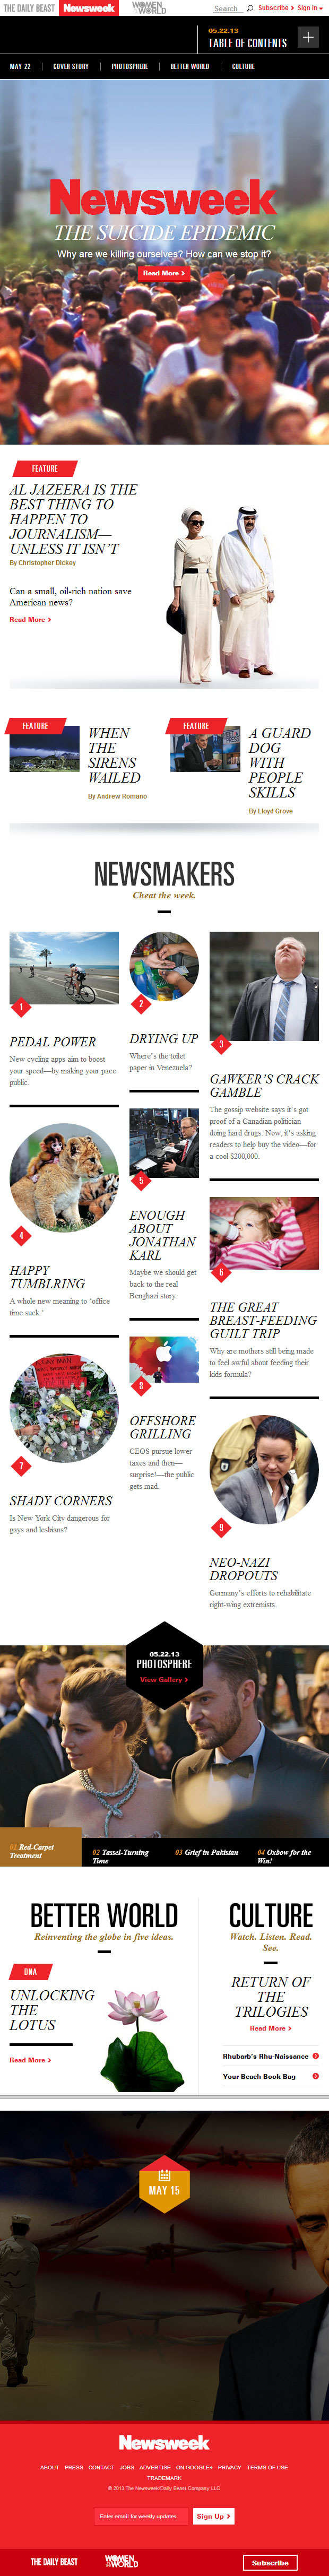 Newsweek 2.0 - A revista que foi redesenhada para o mundo digital